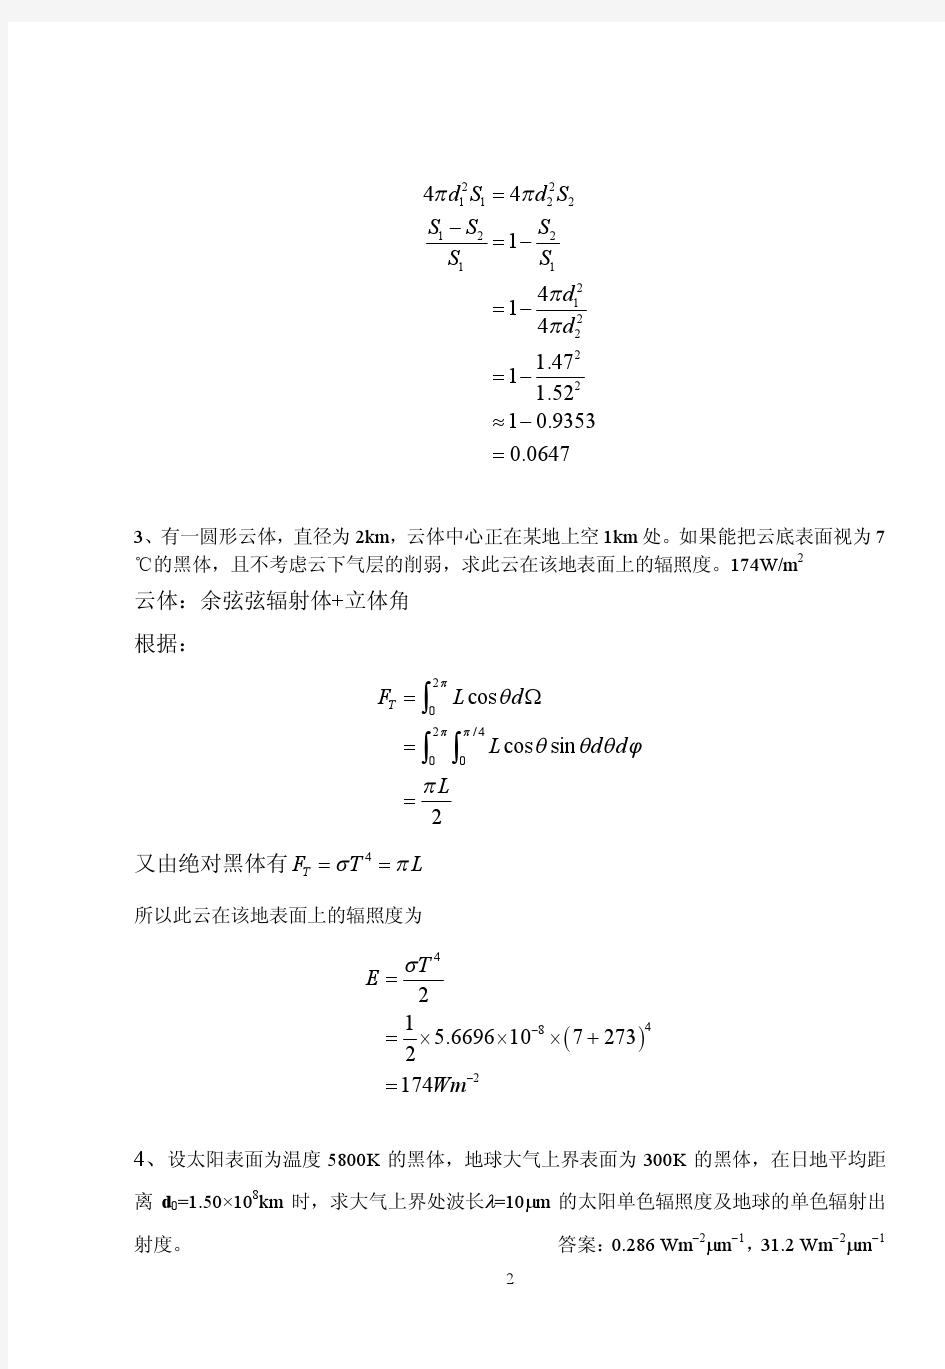 大气物理辐射课后习题(北京大学大气物理学)